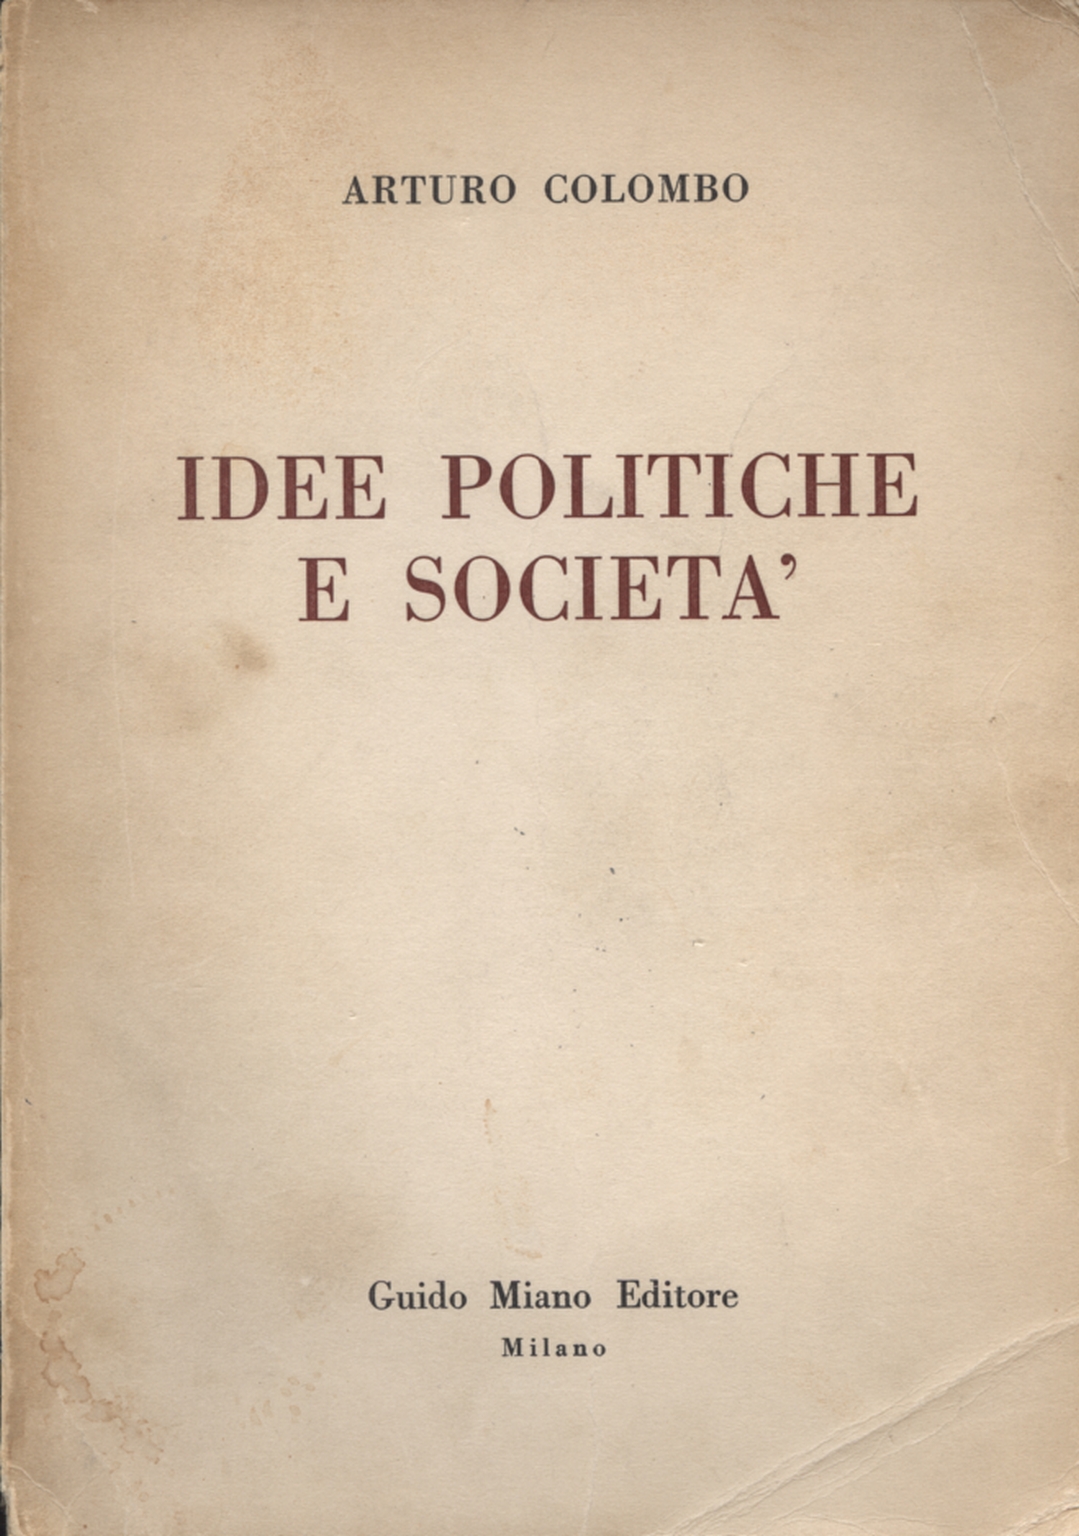 Idee politiche e società, Arturo Colombo